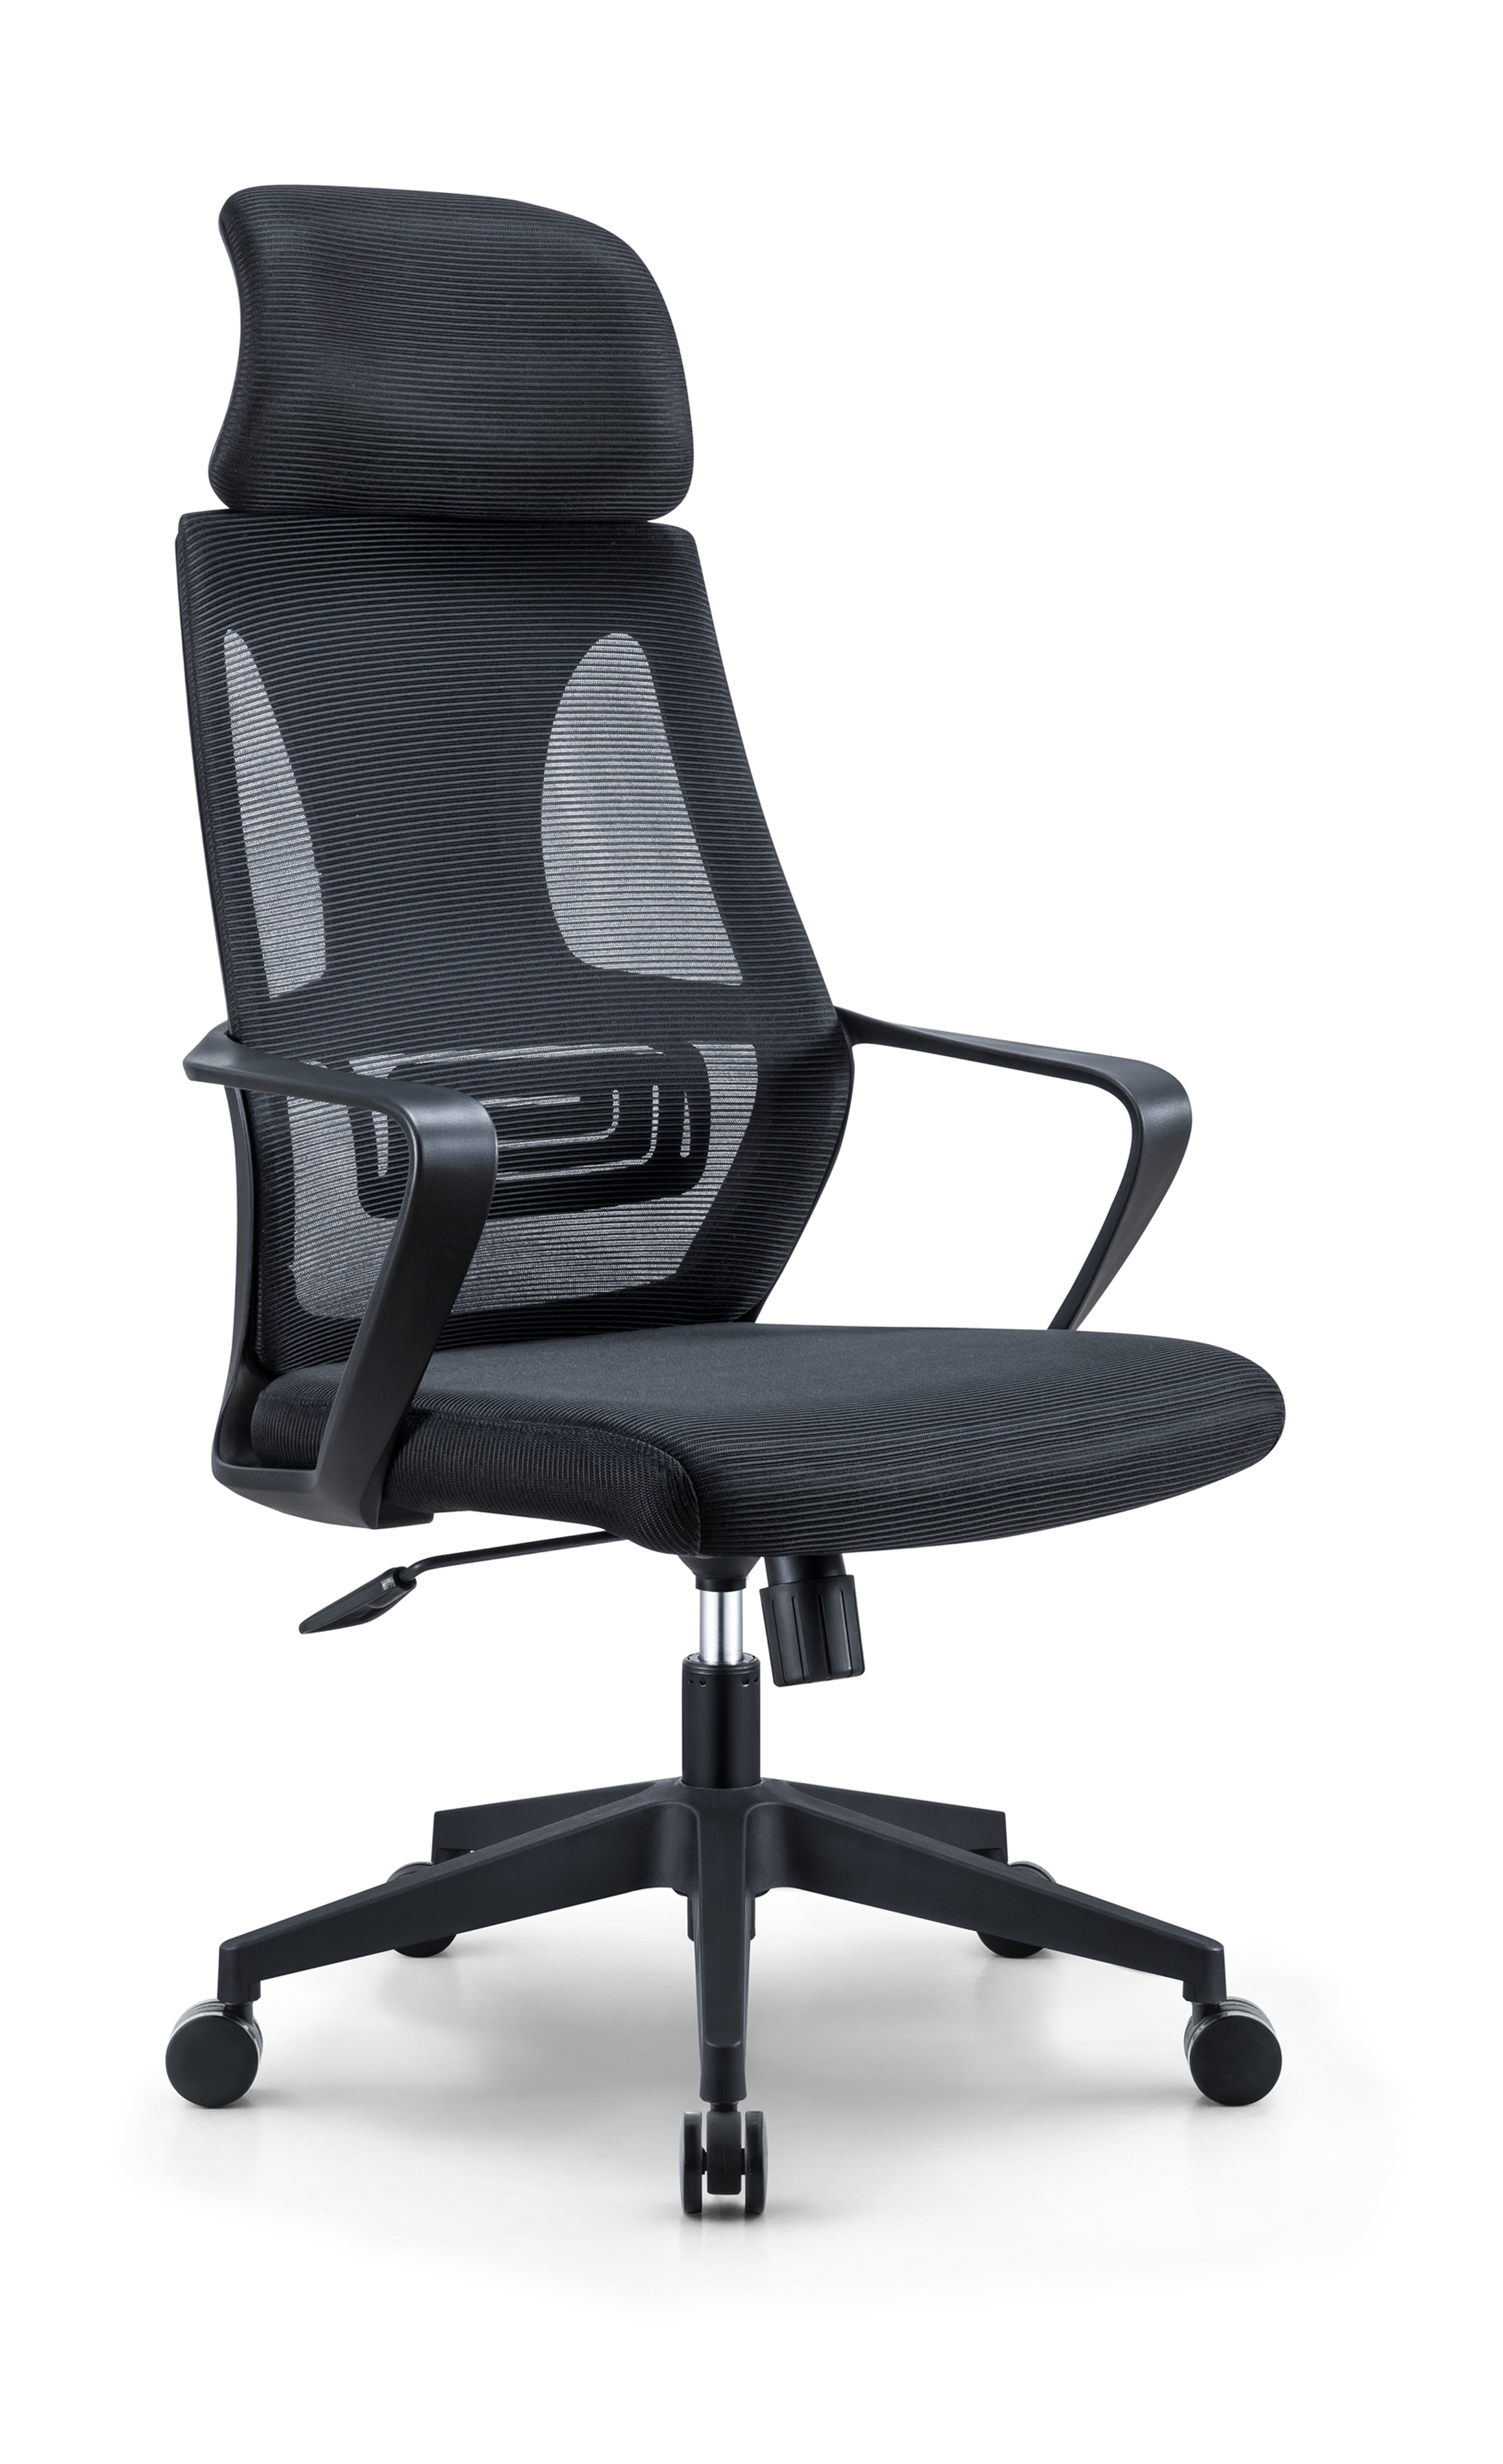 Newcity 544A Горячая Распродажа, современный сетчатый стул с высокой спинкой, лучшая цена, сетчатый стул, регулируемый подголовник, сетчатый стул, вращающийся стул для персонала, поставщик офисной мебели Фошань, Китай